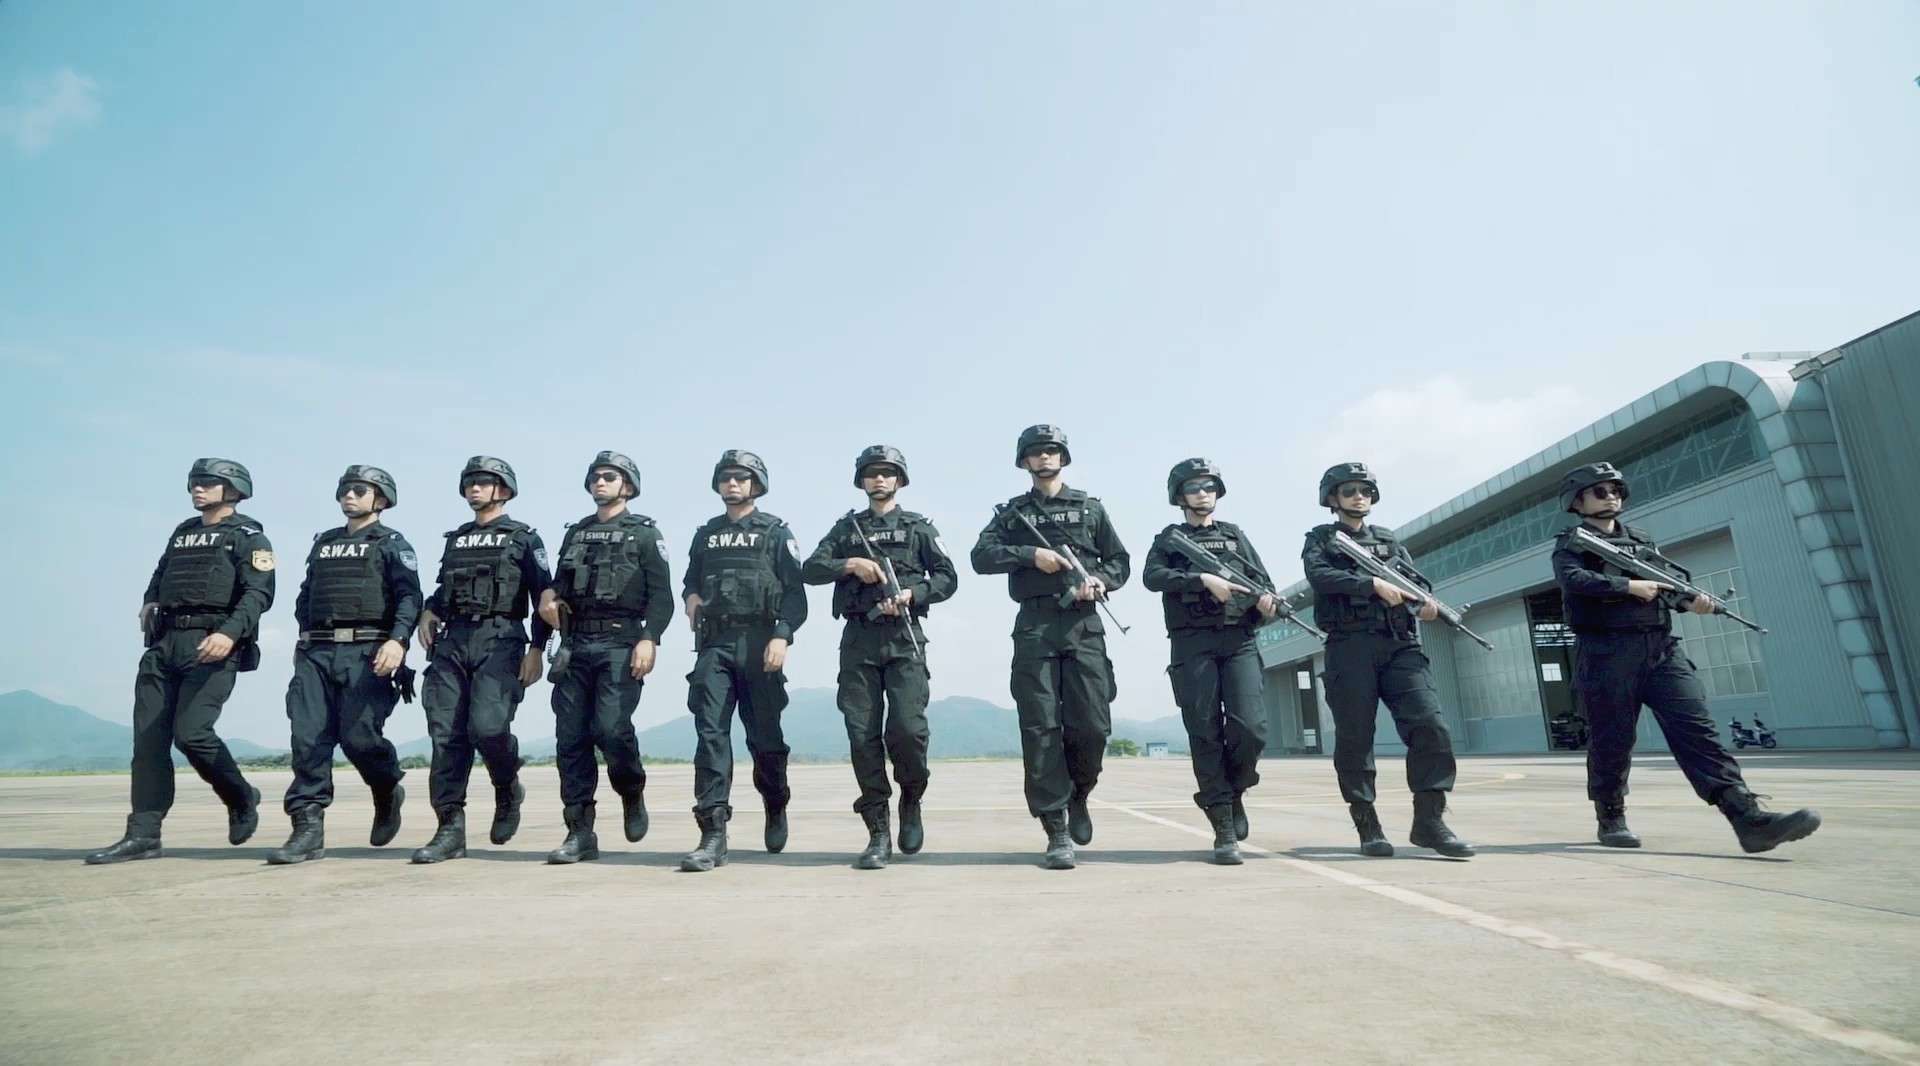 广州市公安局《反恐安全听我说》系列视频一